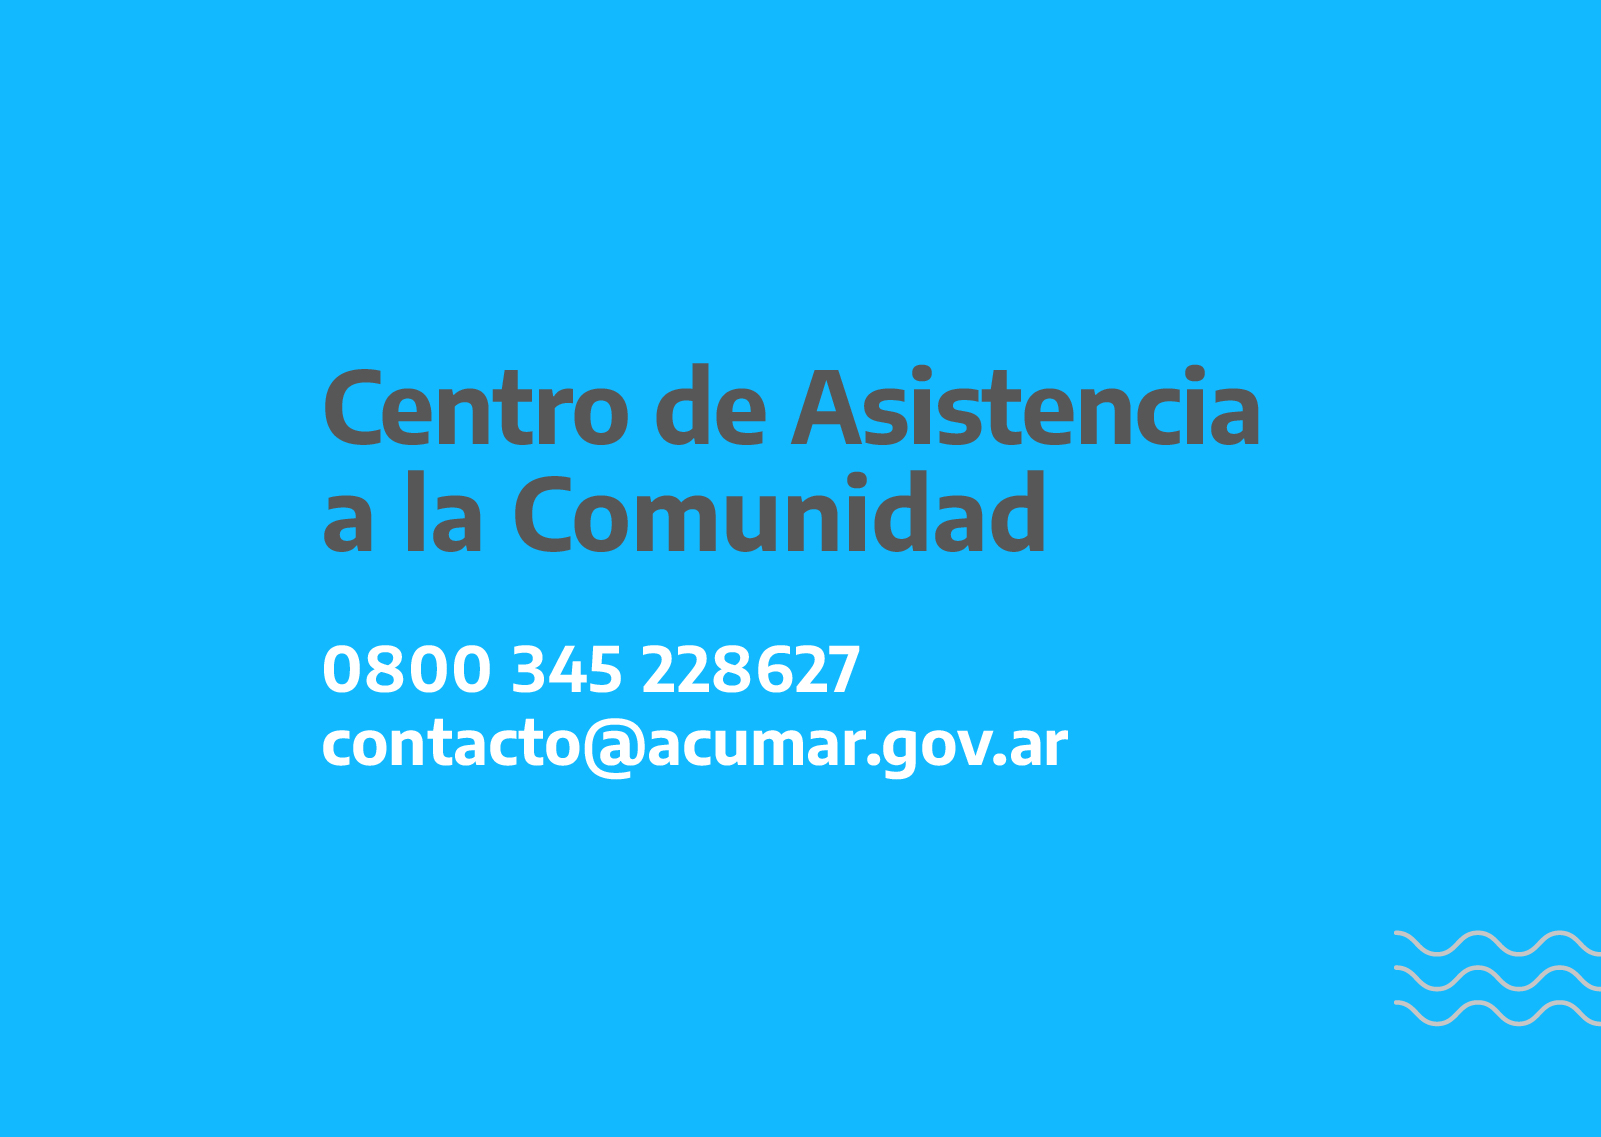 Centro de Asistencia a la Comunidad - 0 800 345 228627 / contacto@acumar.gov.ar